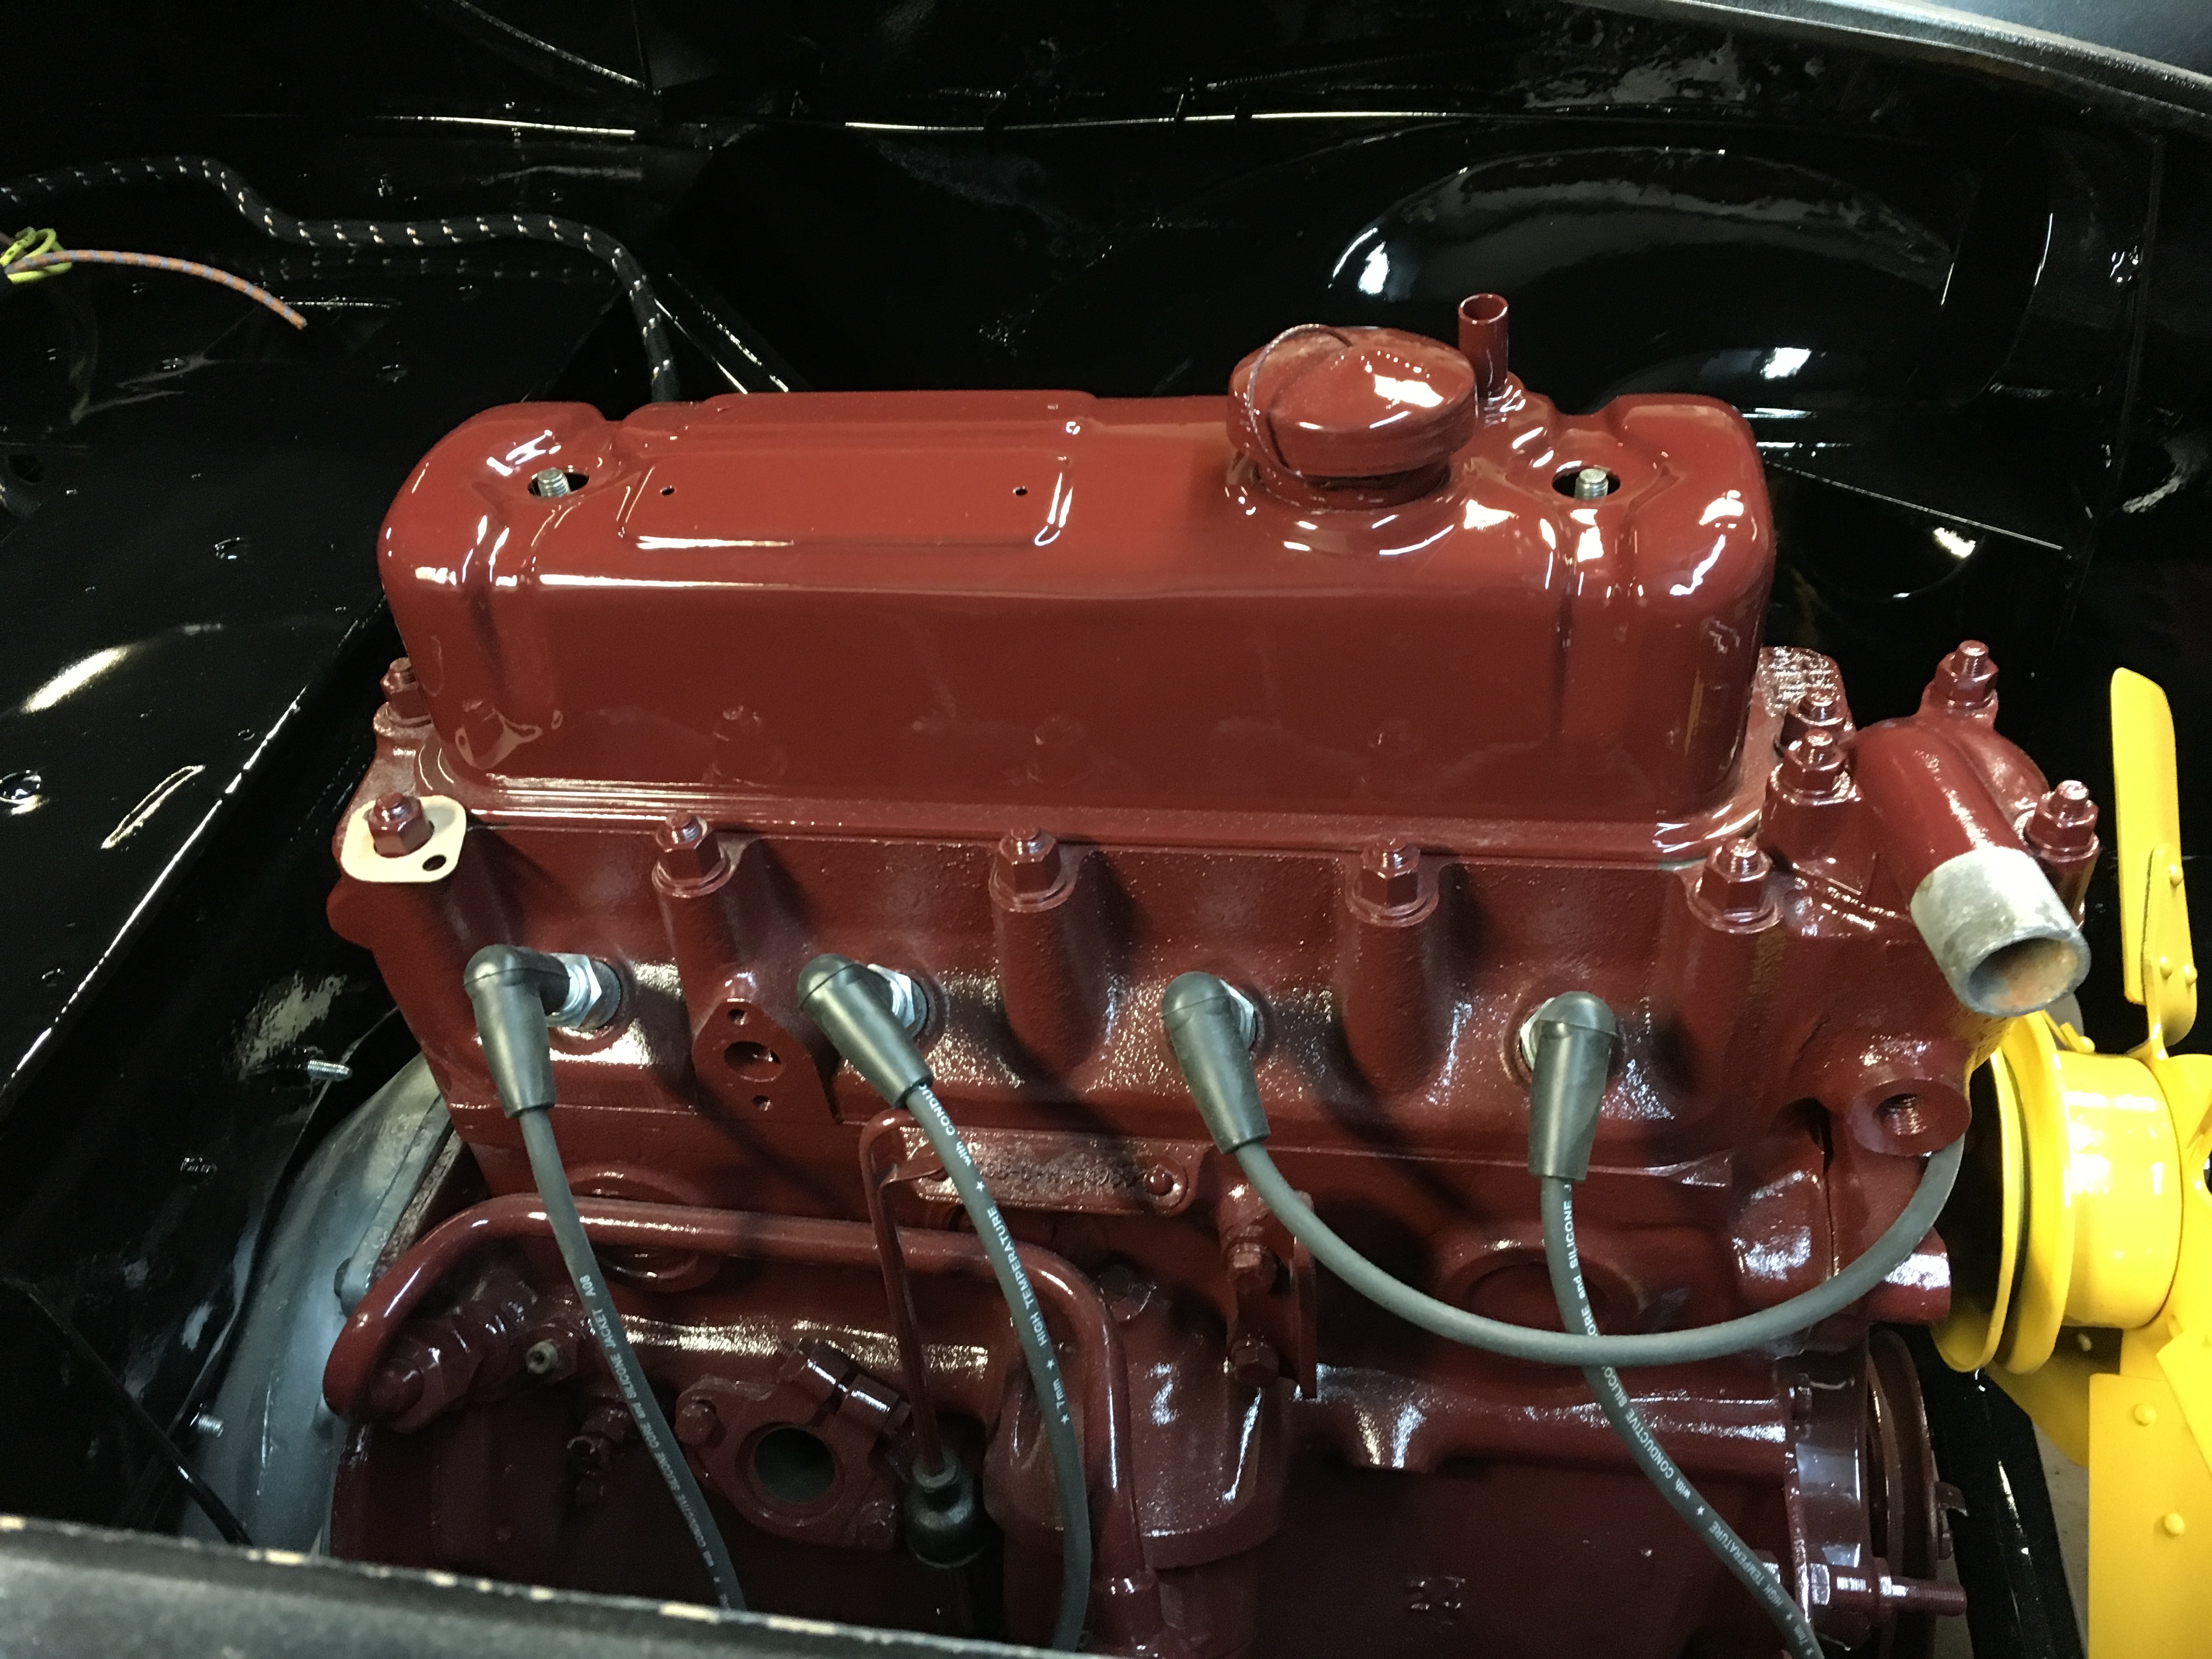 mopar engine paint p4349217